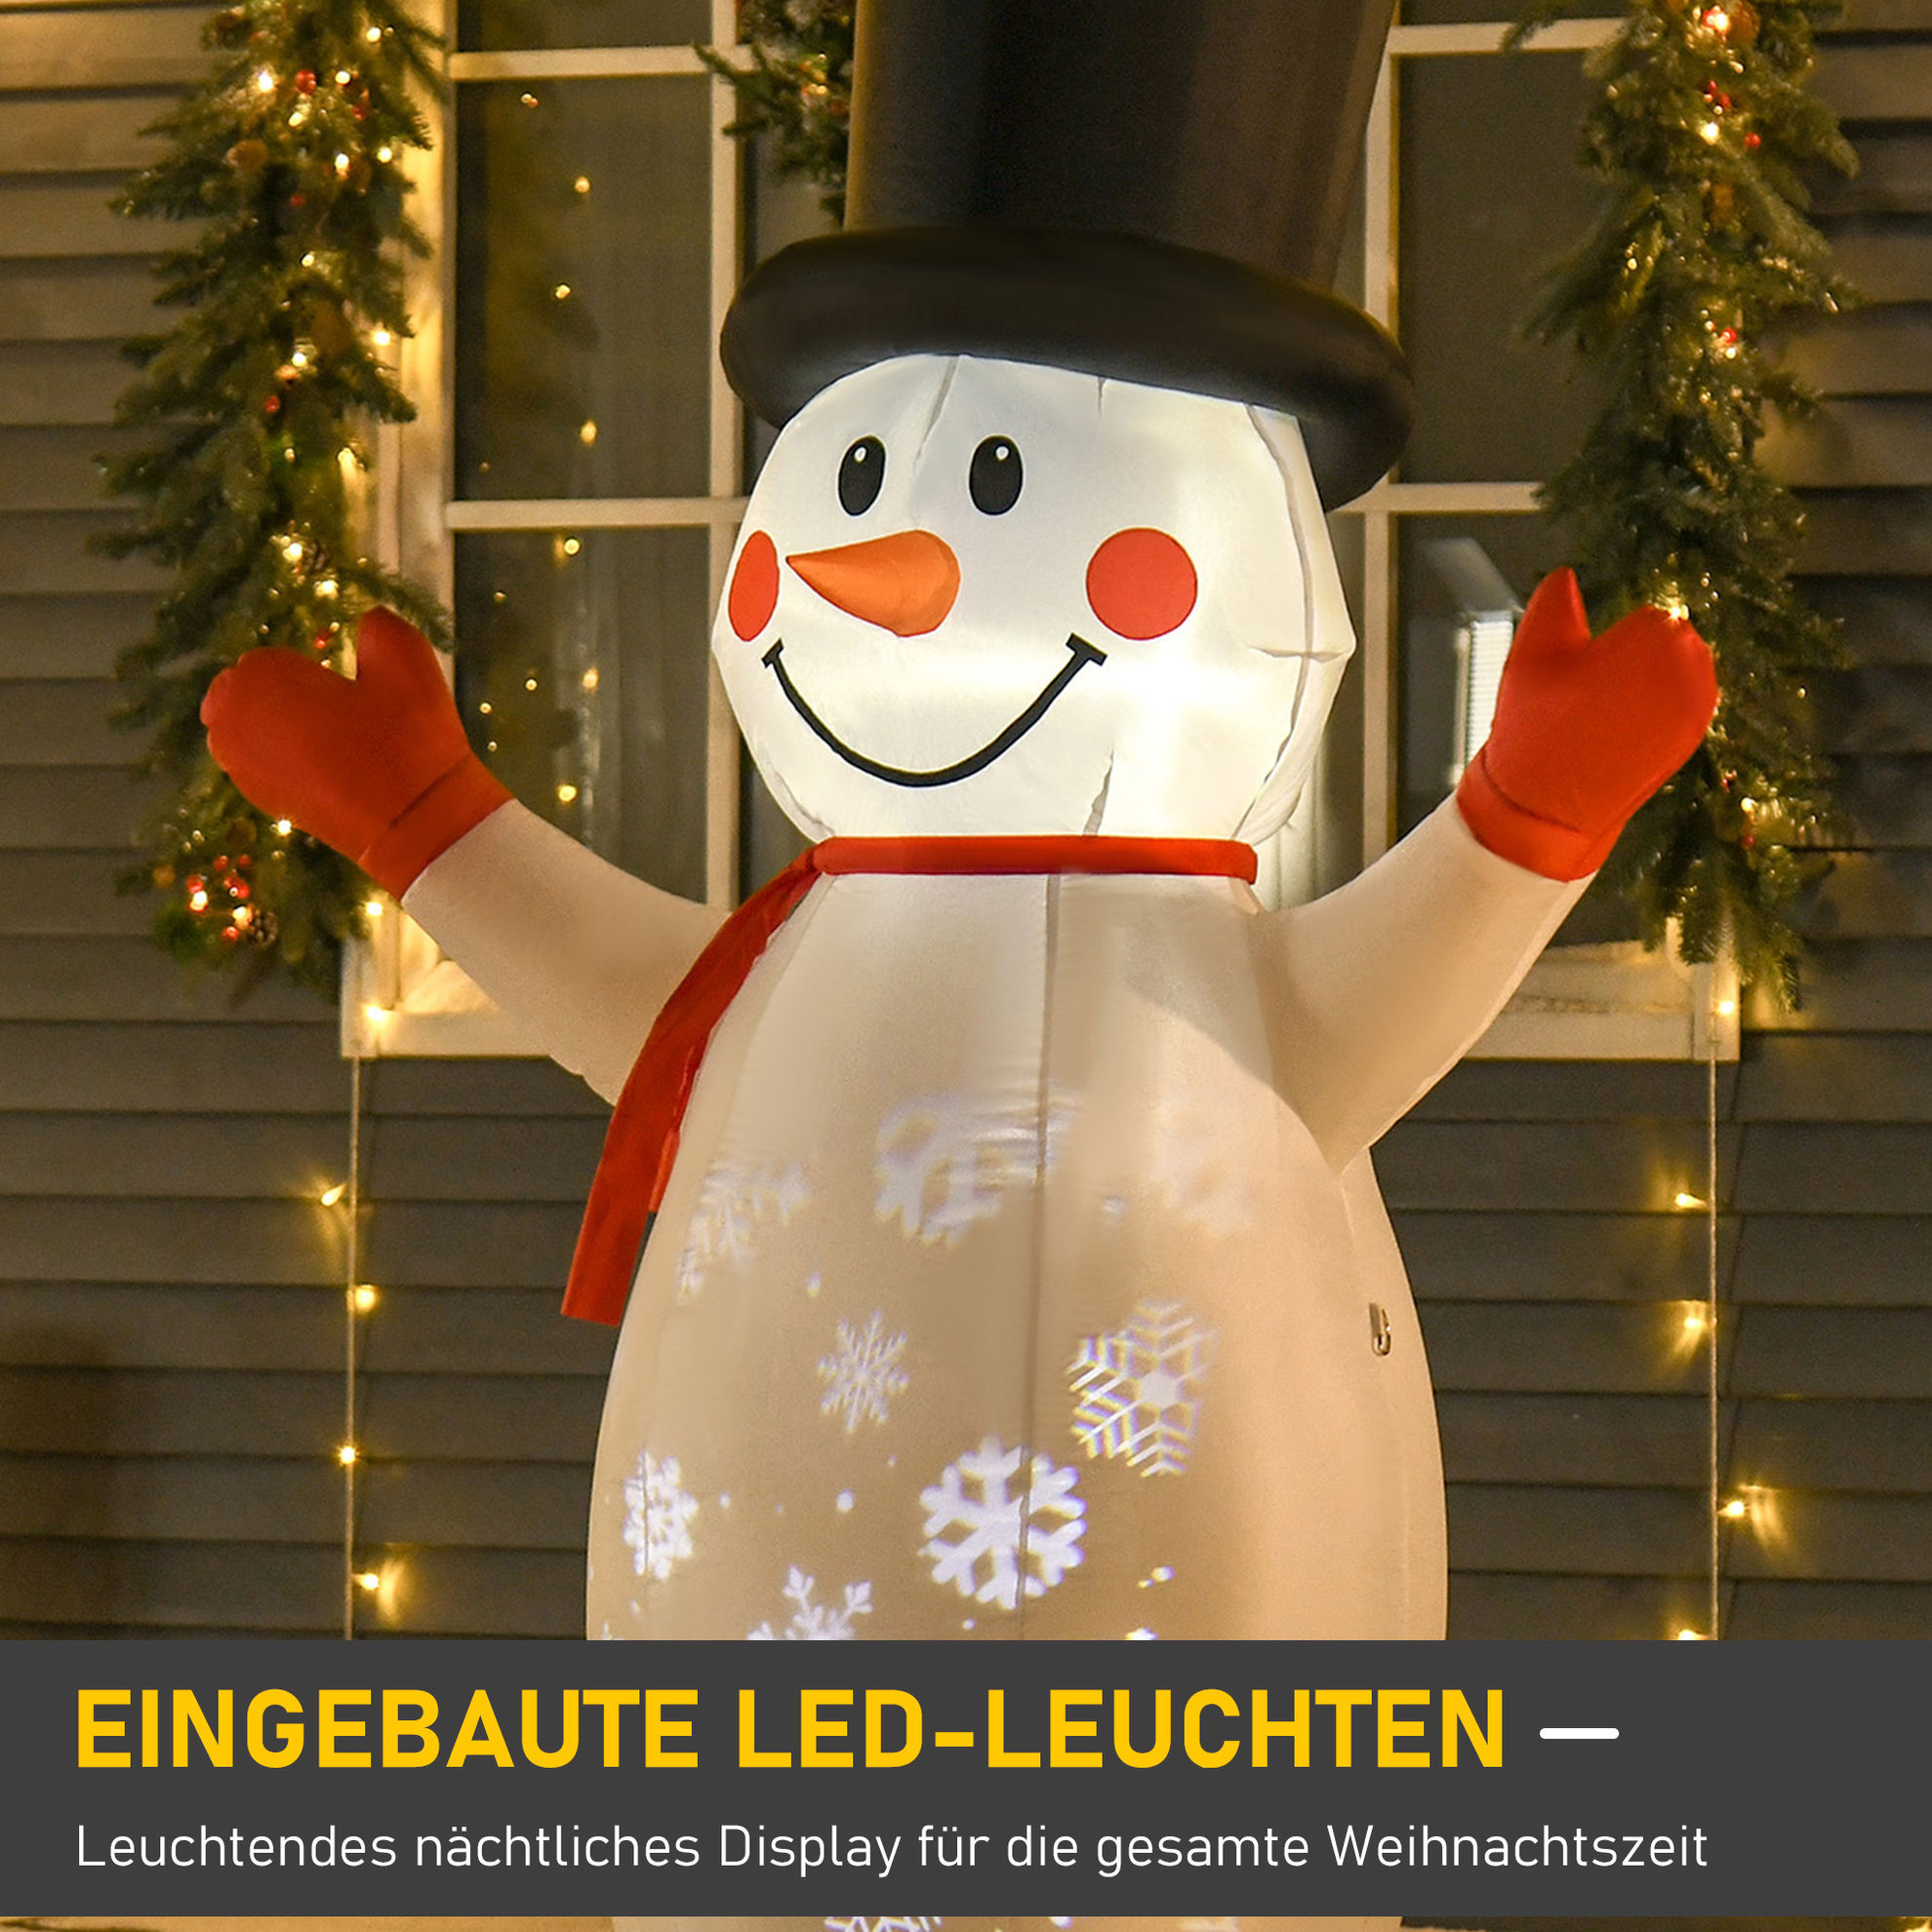 Aufblasbarer Schneemann mit LED-Beleuchtung | Weltbild.de